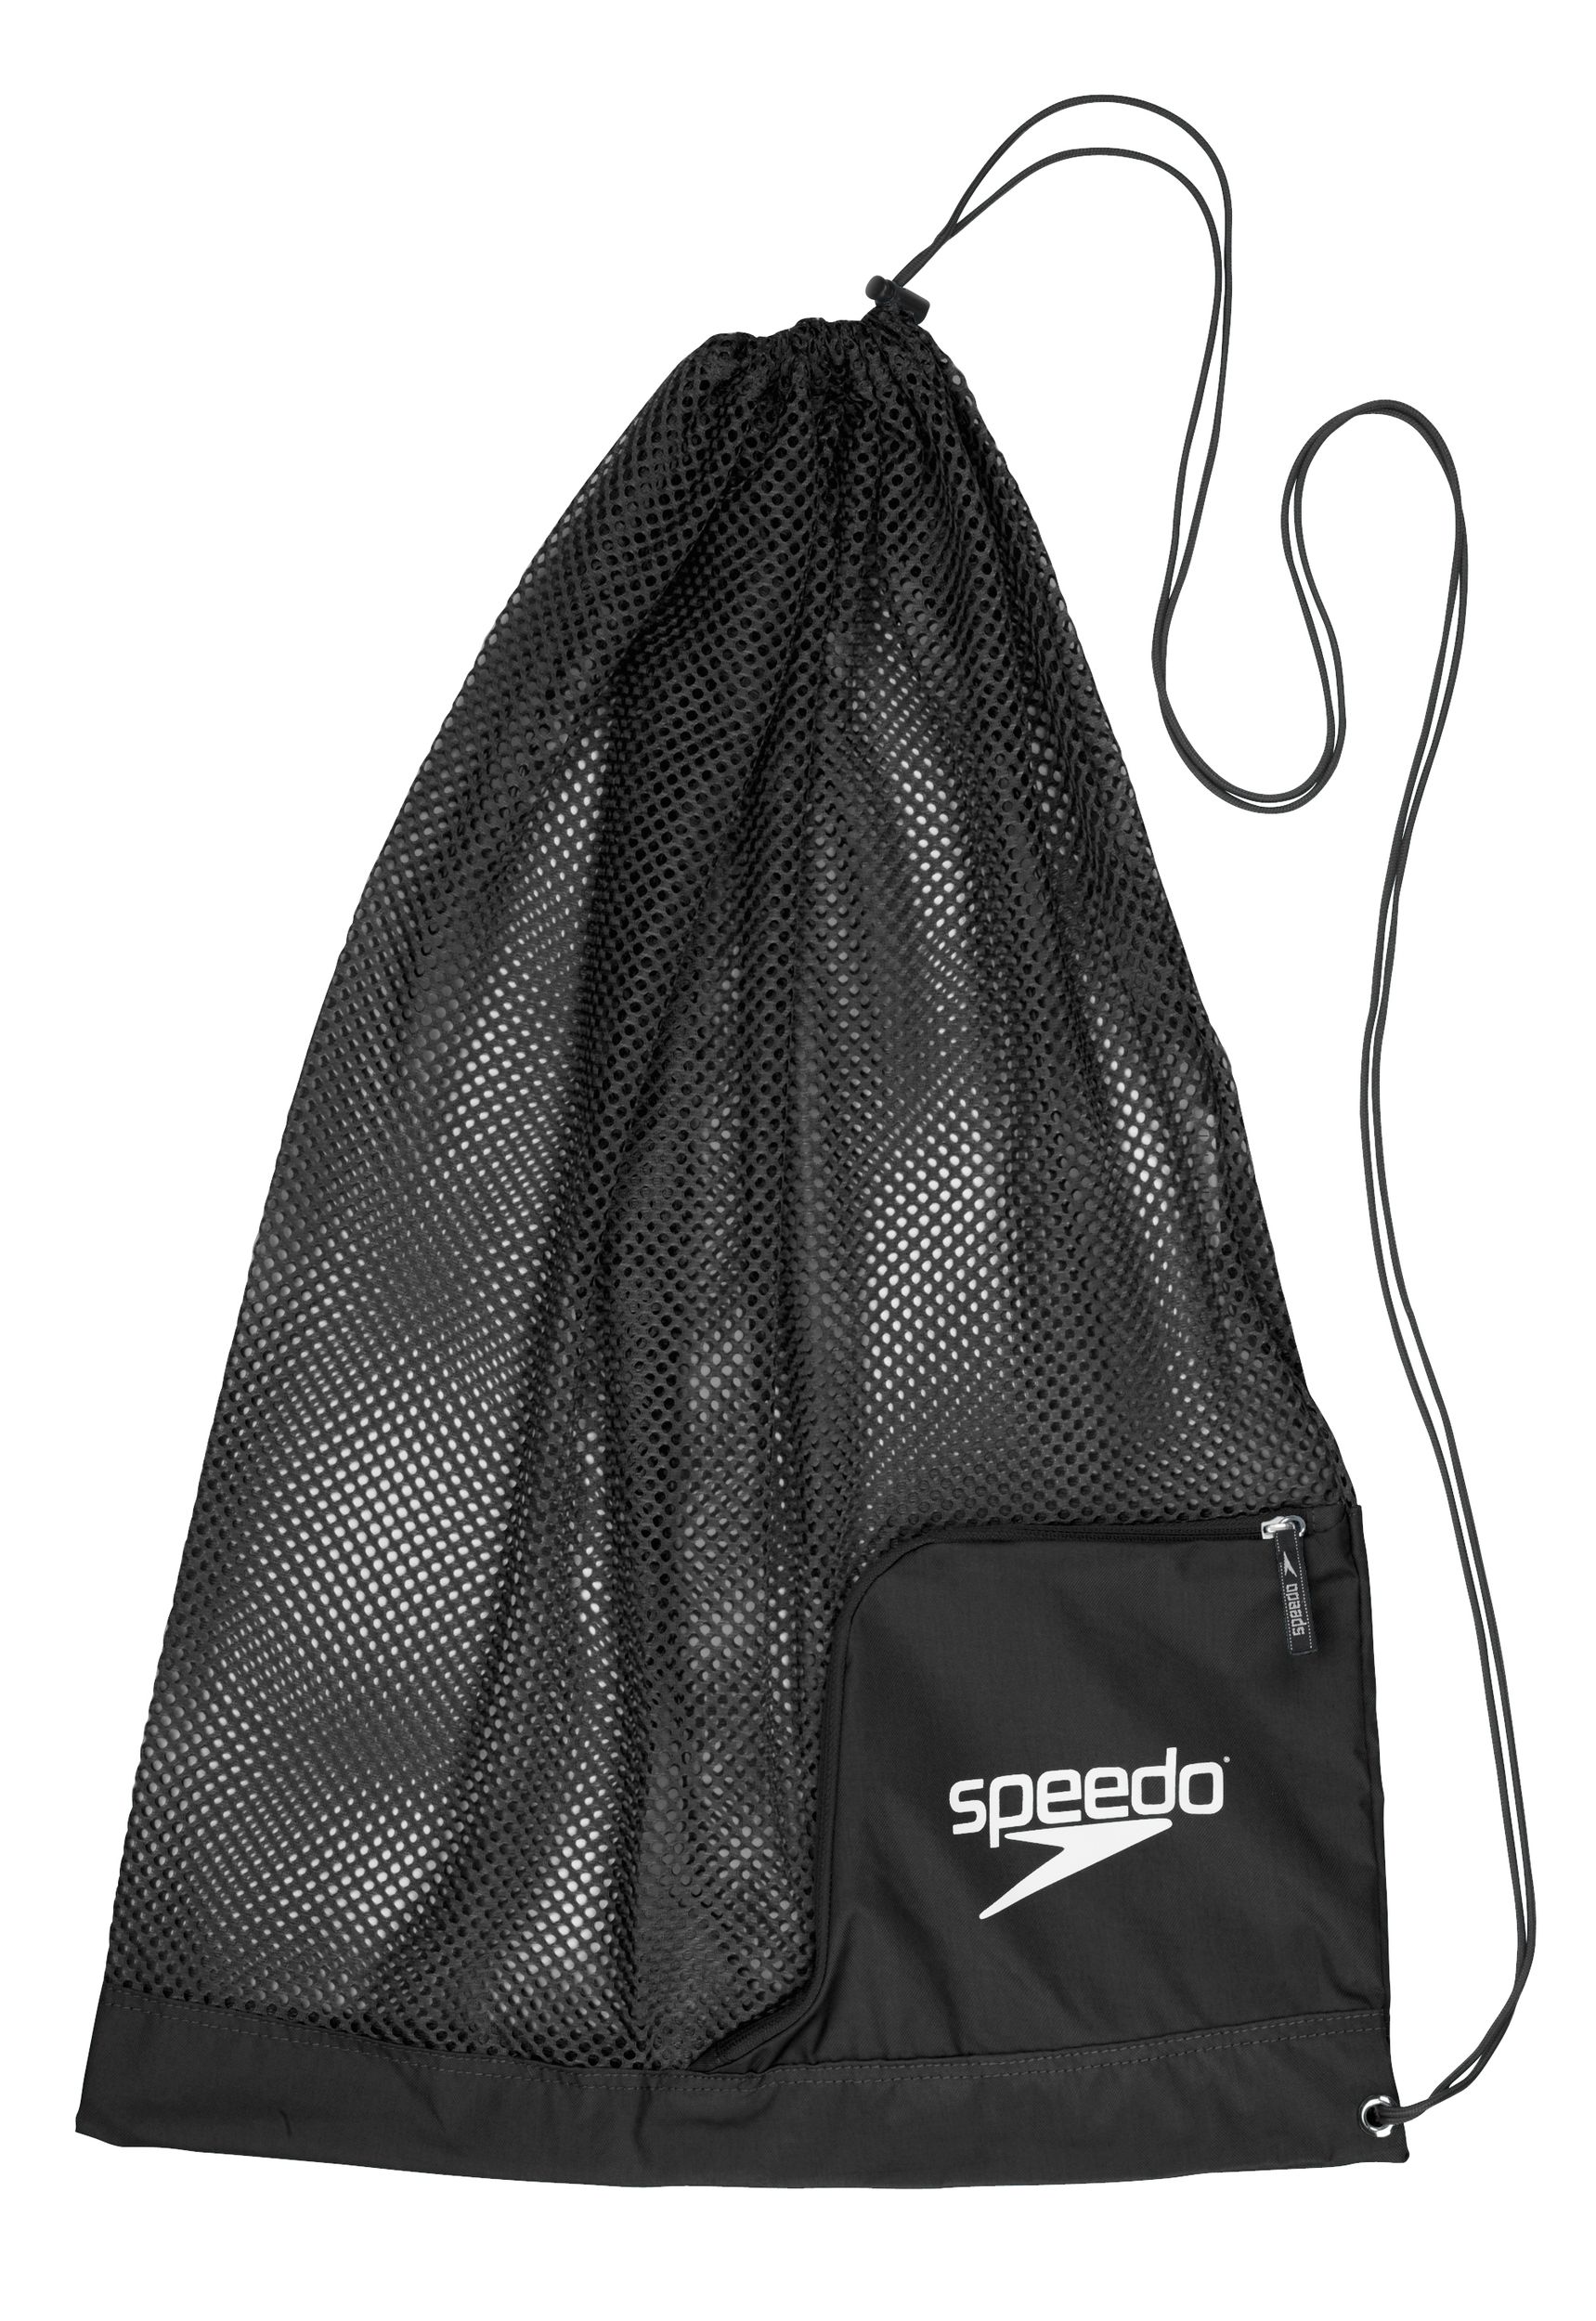 Speedo Deluxe Ventilator Mesh Bag at